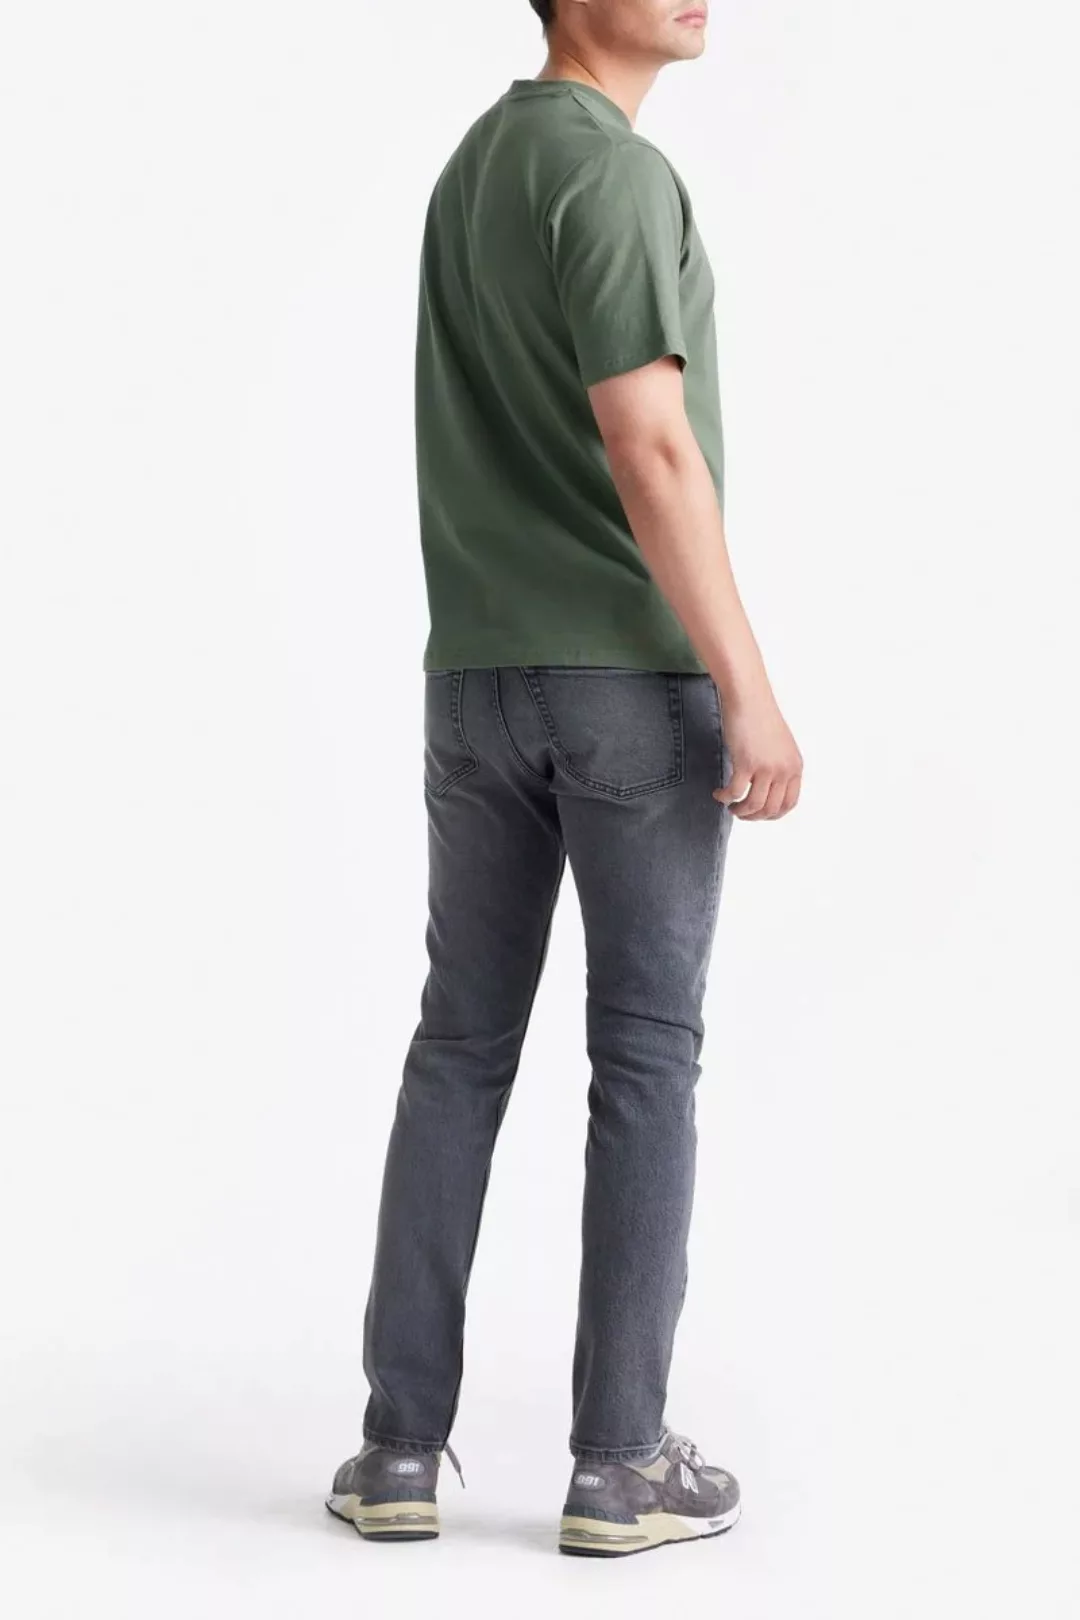 King Essentials The Shawn T-Shirt Olivgrün - Größe L günstig online kaufen